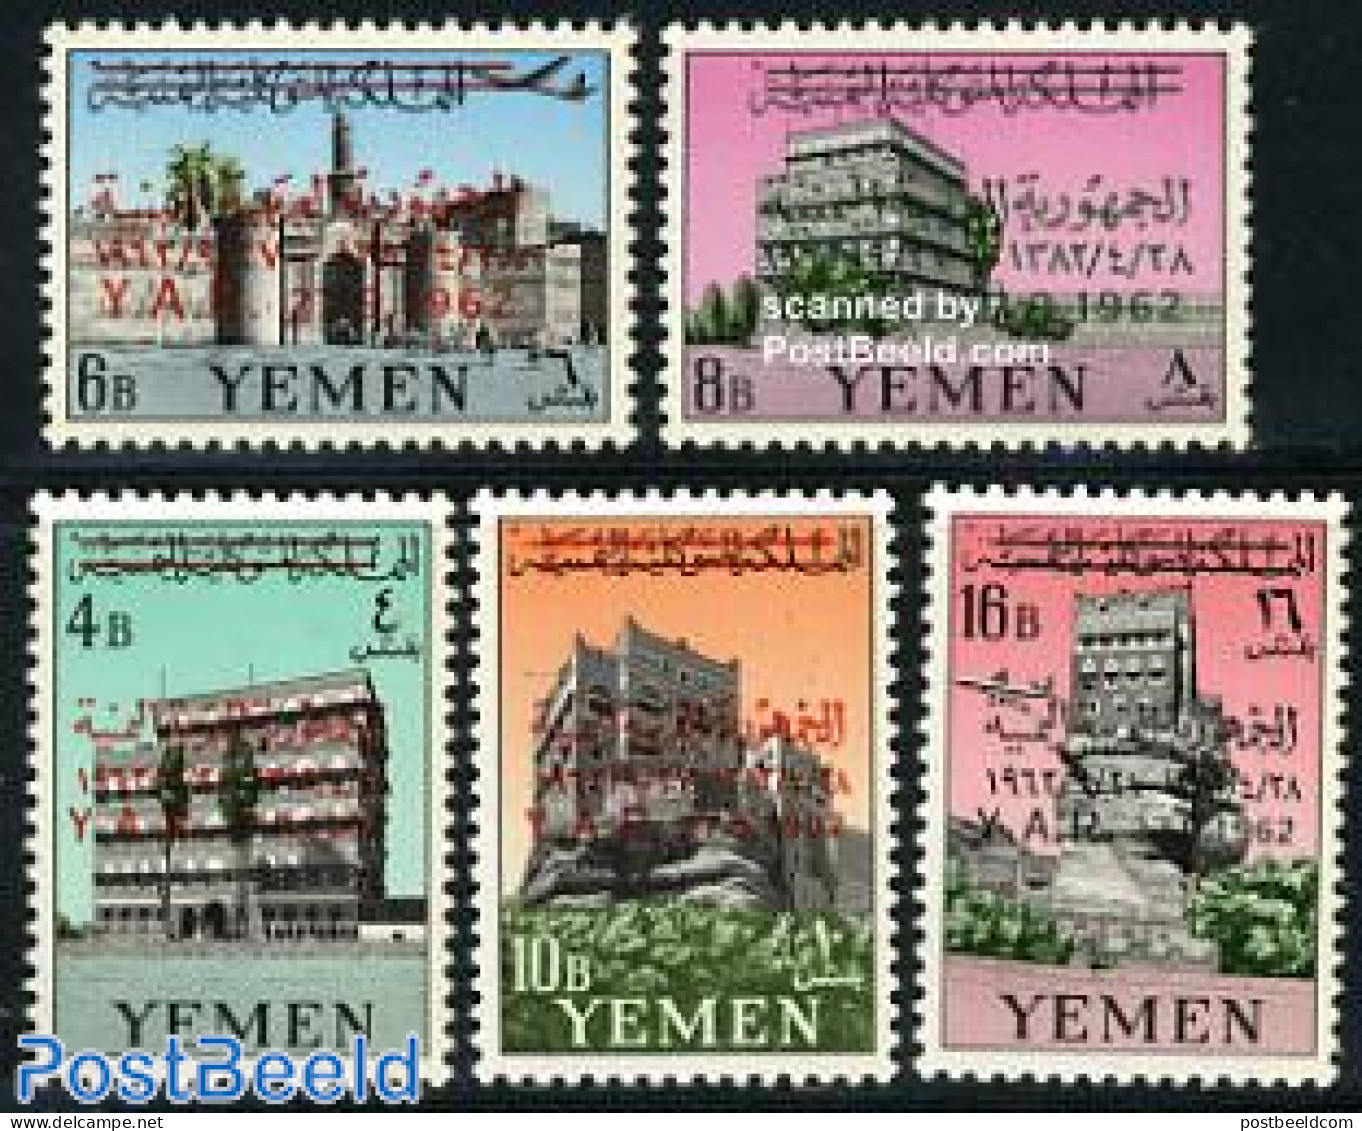 Yemen, Arab Republic 1963 Arab Repoublic Overprints On Defintives 5v, Mint NH, Art - Castles & Fortifications - Castillos